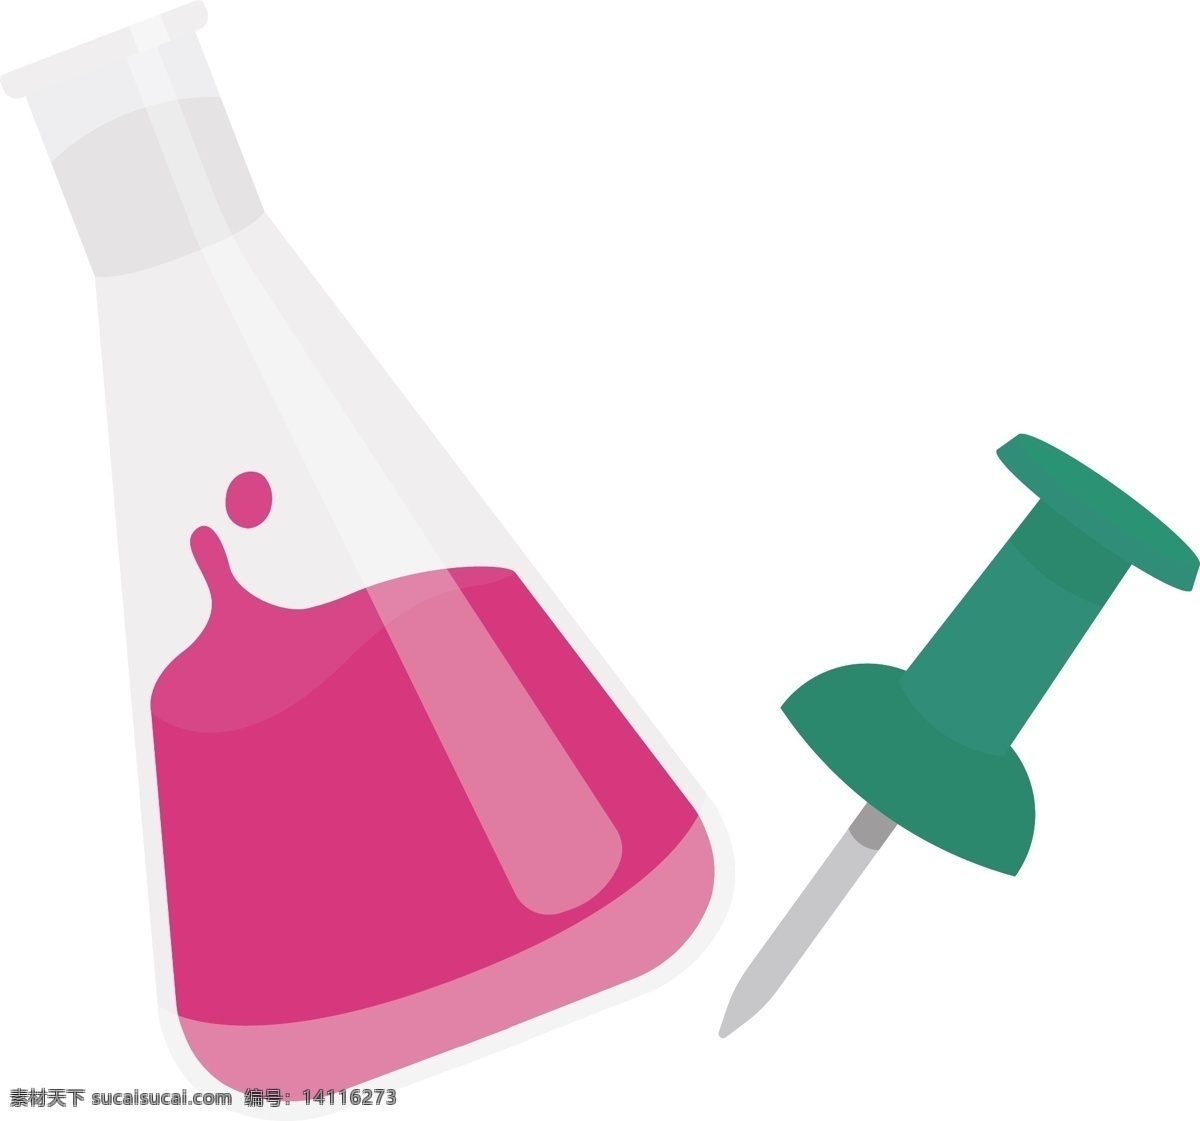 锥形 瓶 化学 烧杯 锥形瓶 实验工具 别针 化学实验 生活百科 学习用品